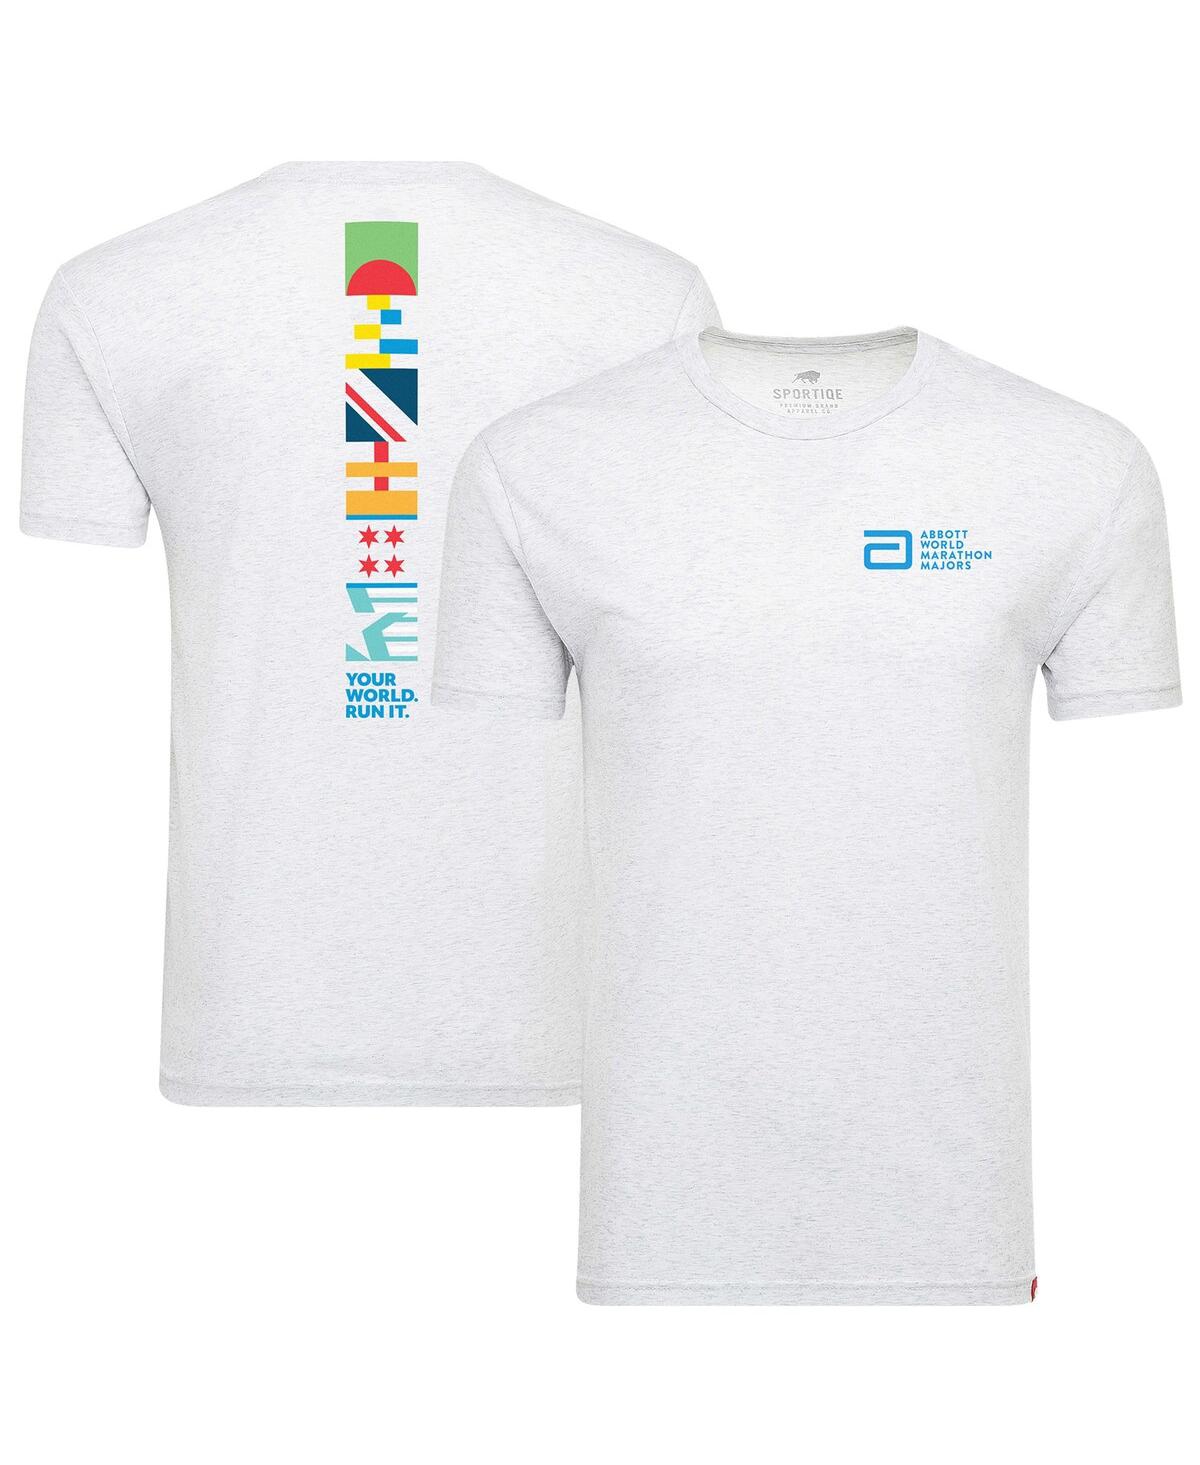 Men's and Women's Sportiqe White World Marathon Majors Comfy Tri-Blend T-shirt - White